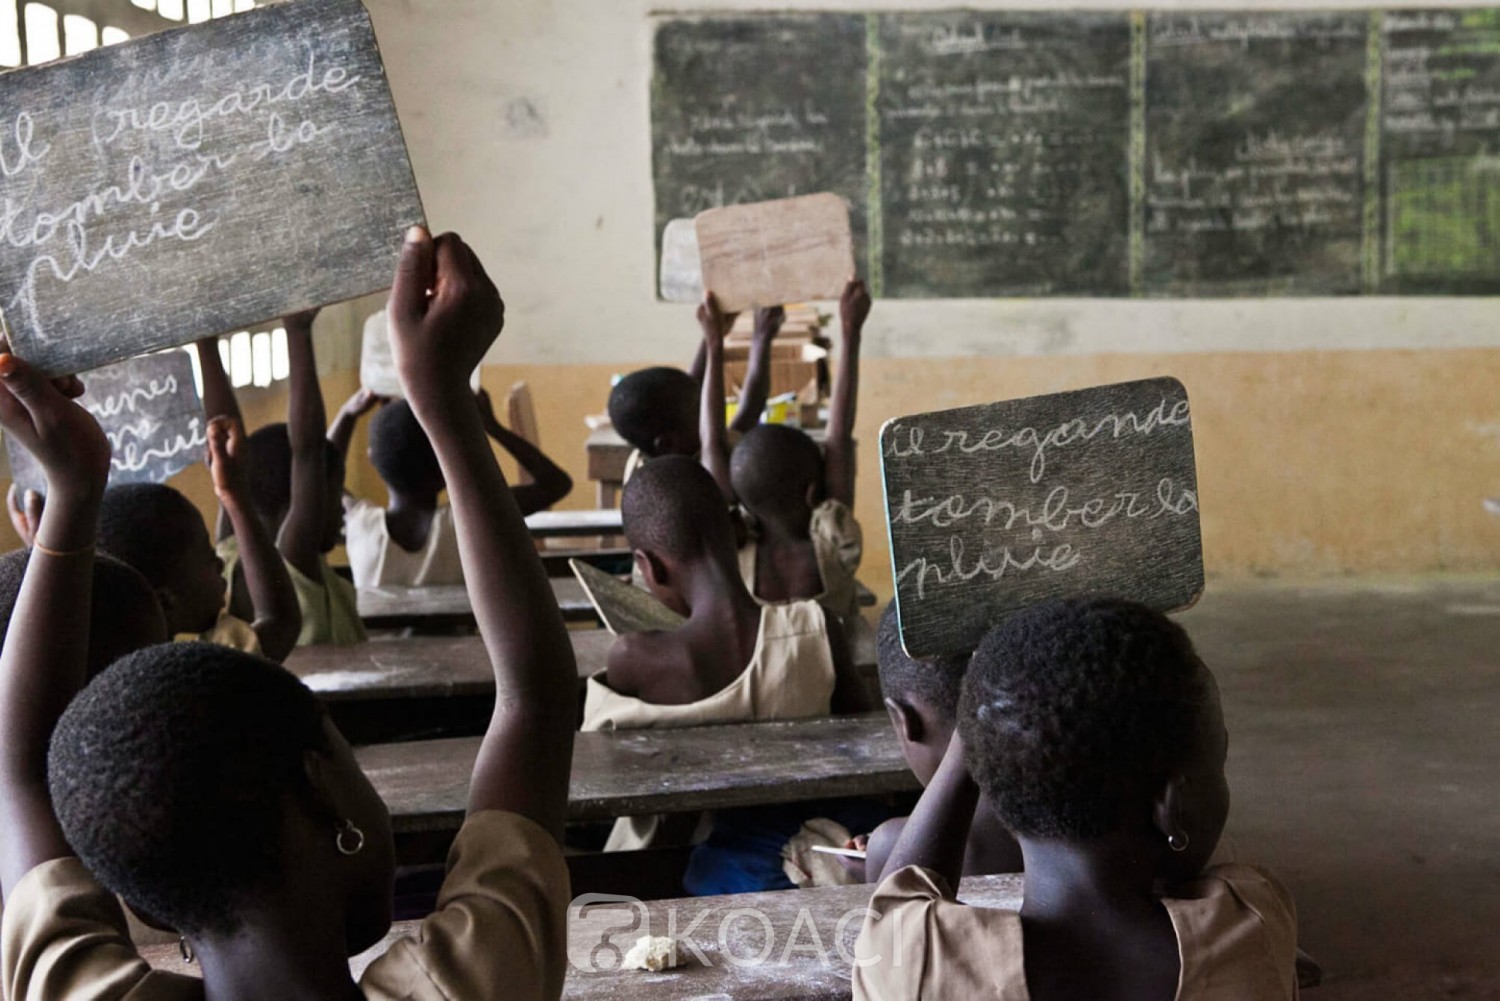 Côte d'Ivoire: Point de la rentrée scolaire 2019-2020, 811 759 élèves inscrits au CP1, soit un taux d'accroissement de 12% par rapport à l'année dernière